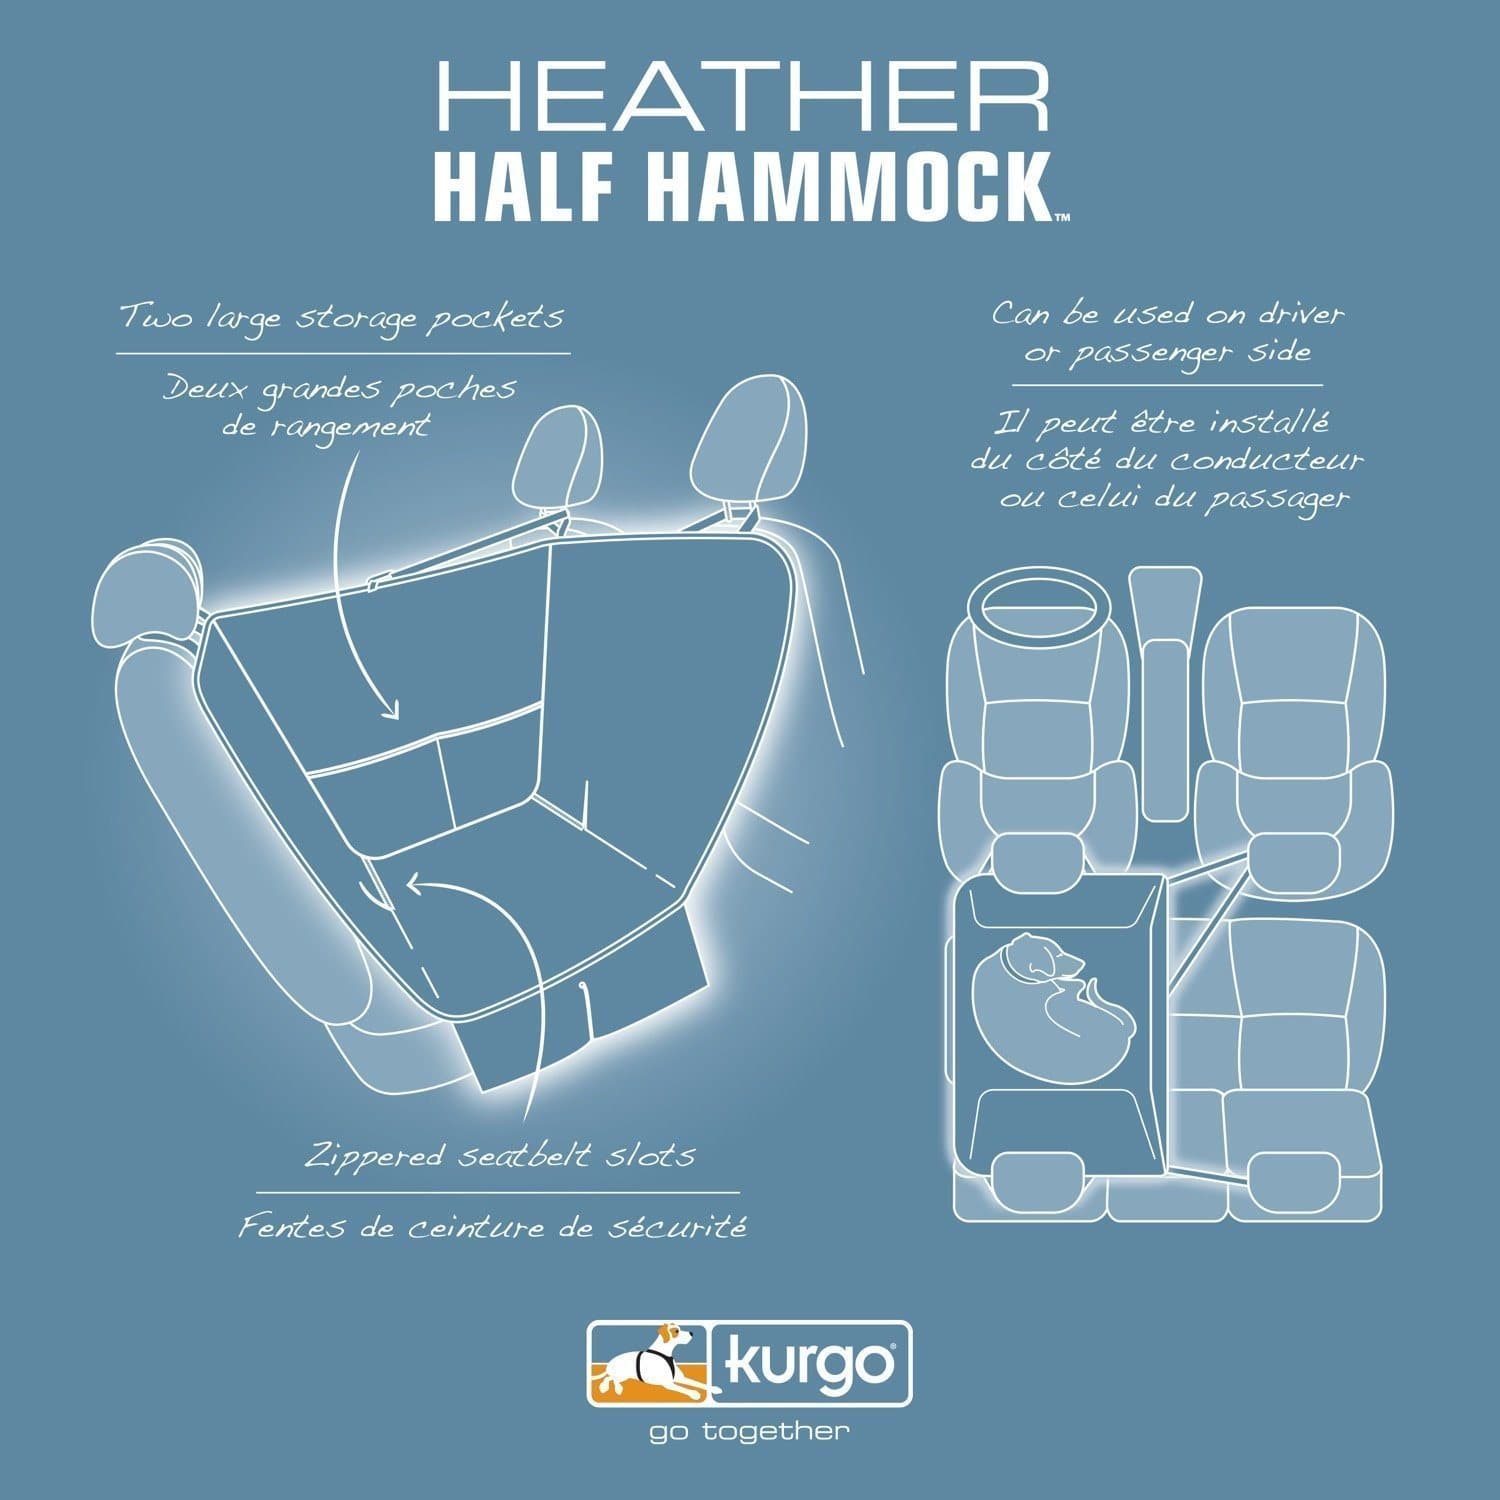 Half Hammock Heathern Negro - Media Hamaca Cubre Asientos para Perros de Kurgo®